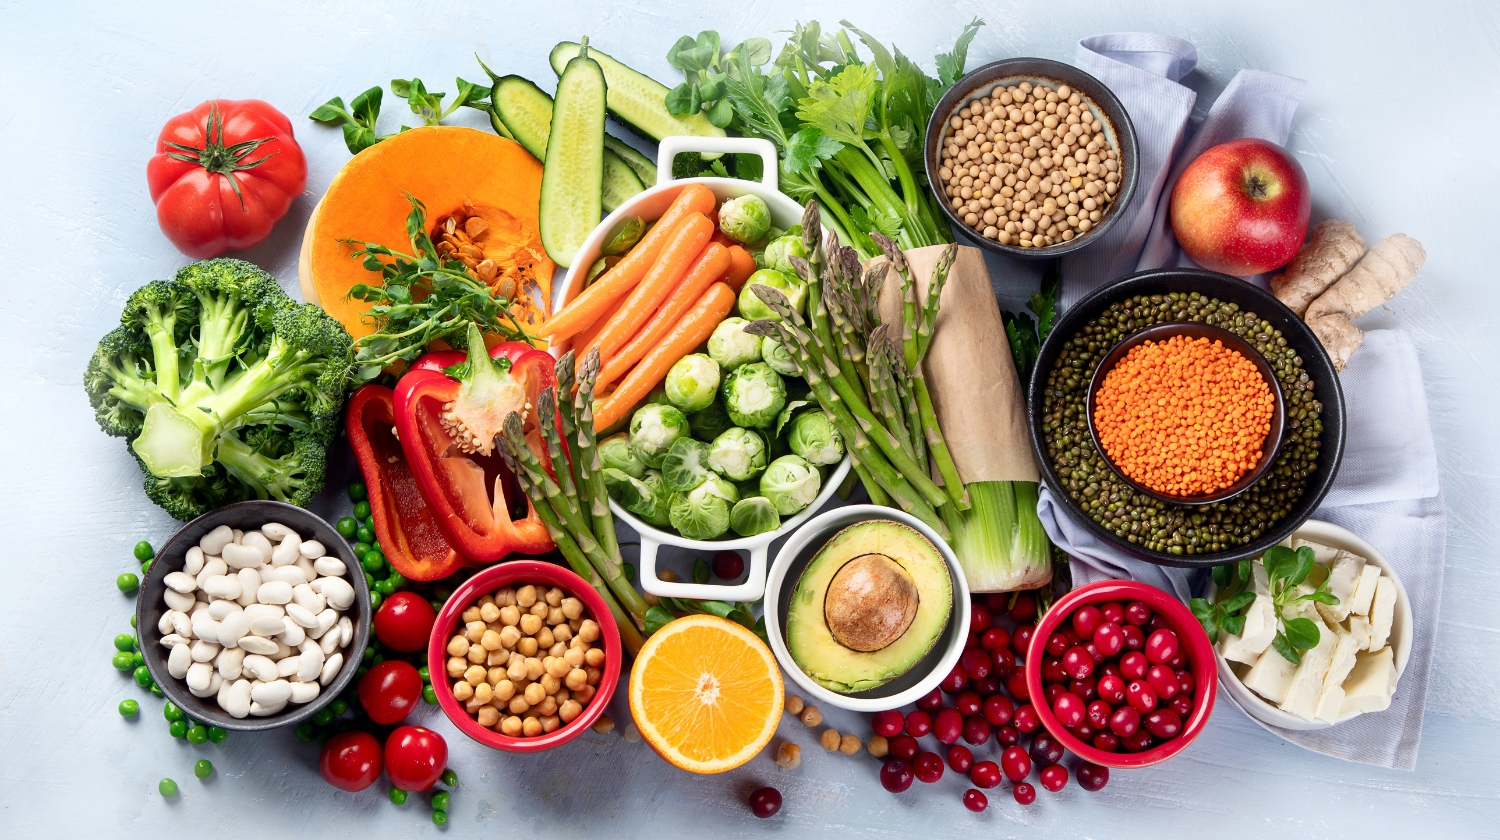 Welche Nährstoffe sind empfehlenswert bei einer veganen Diät?